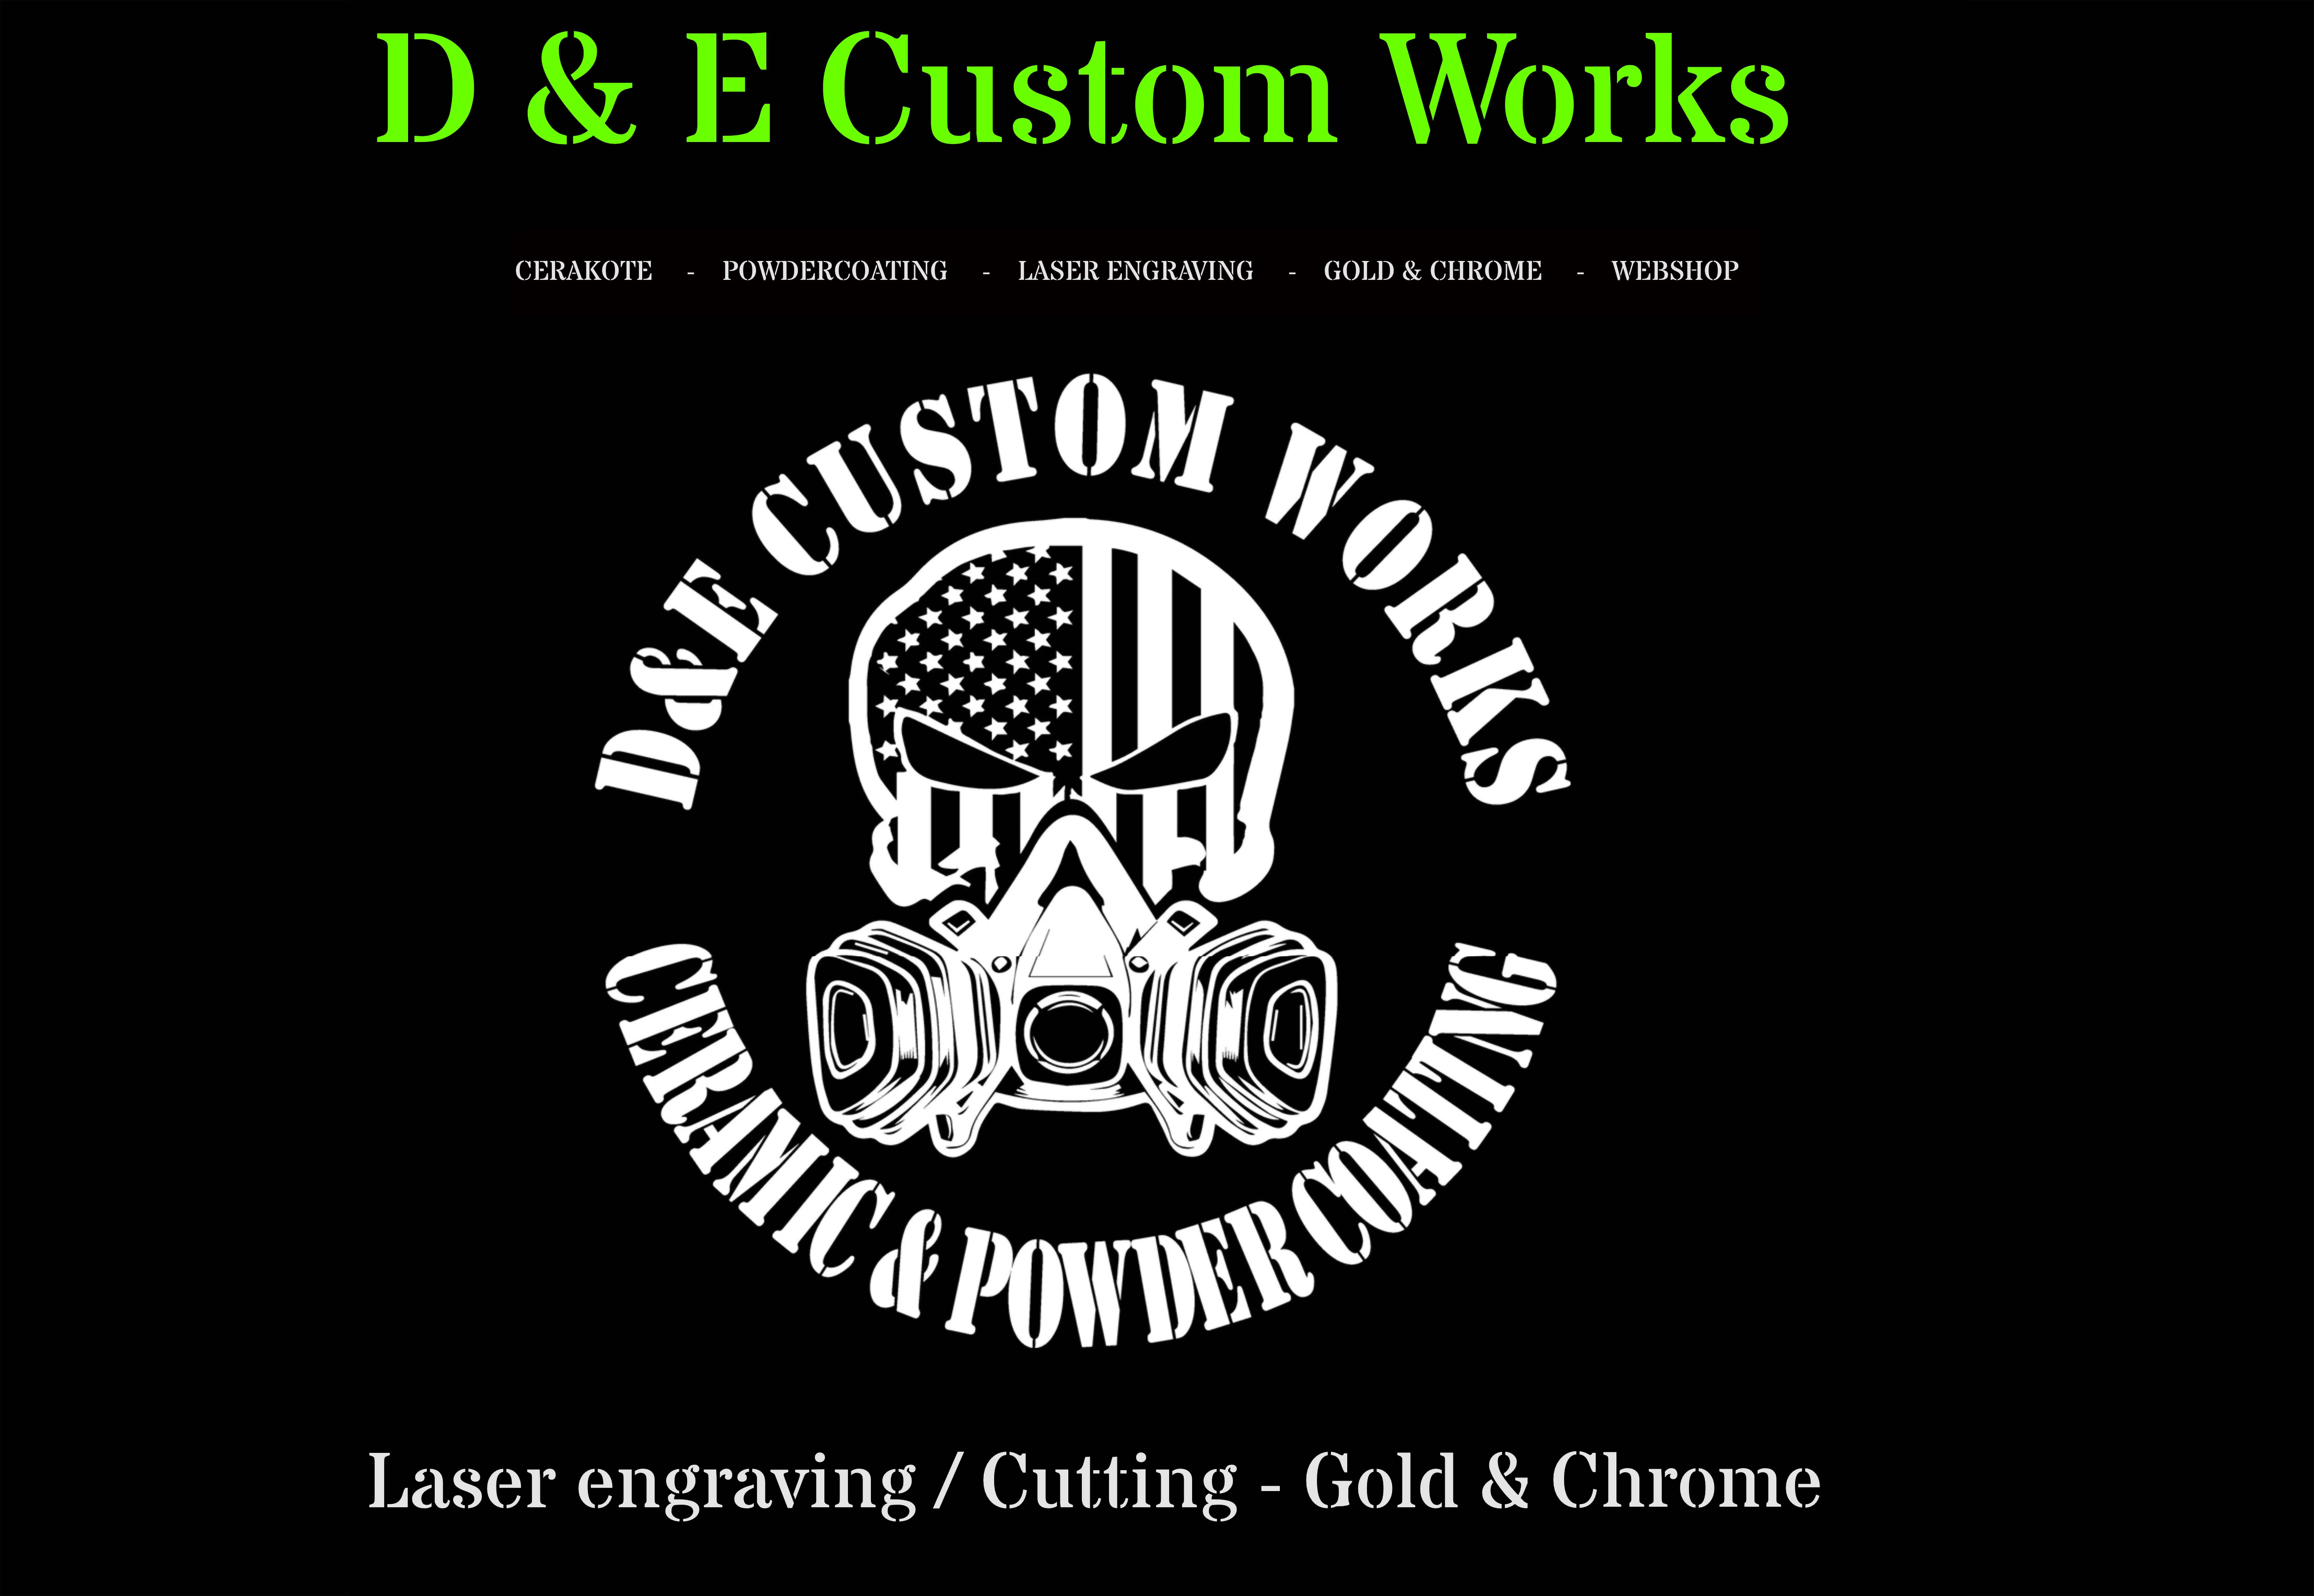 D & E Custom Works